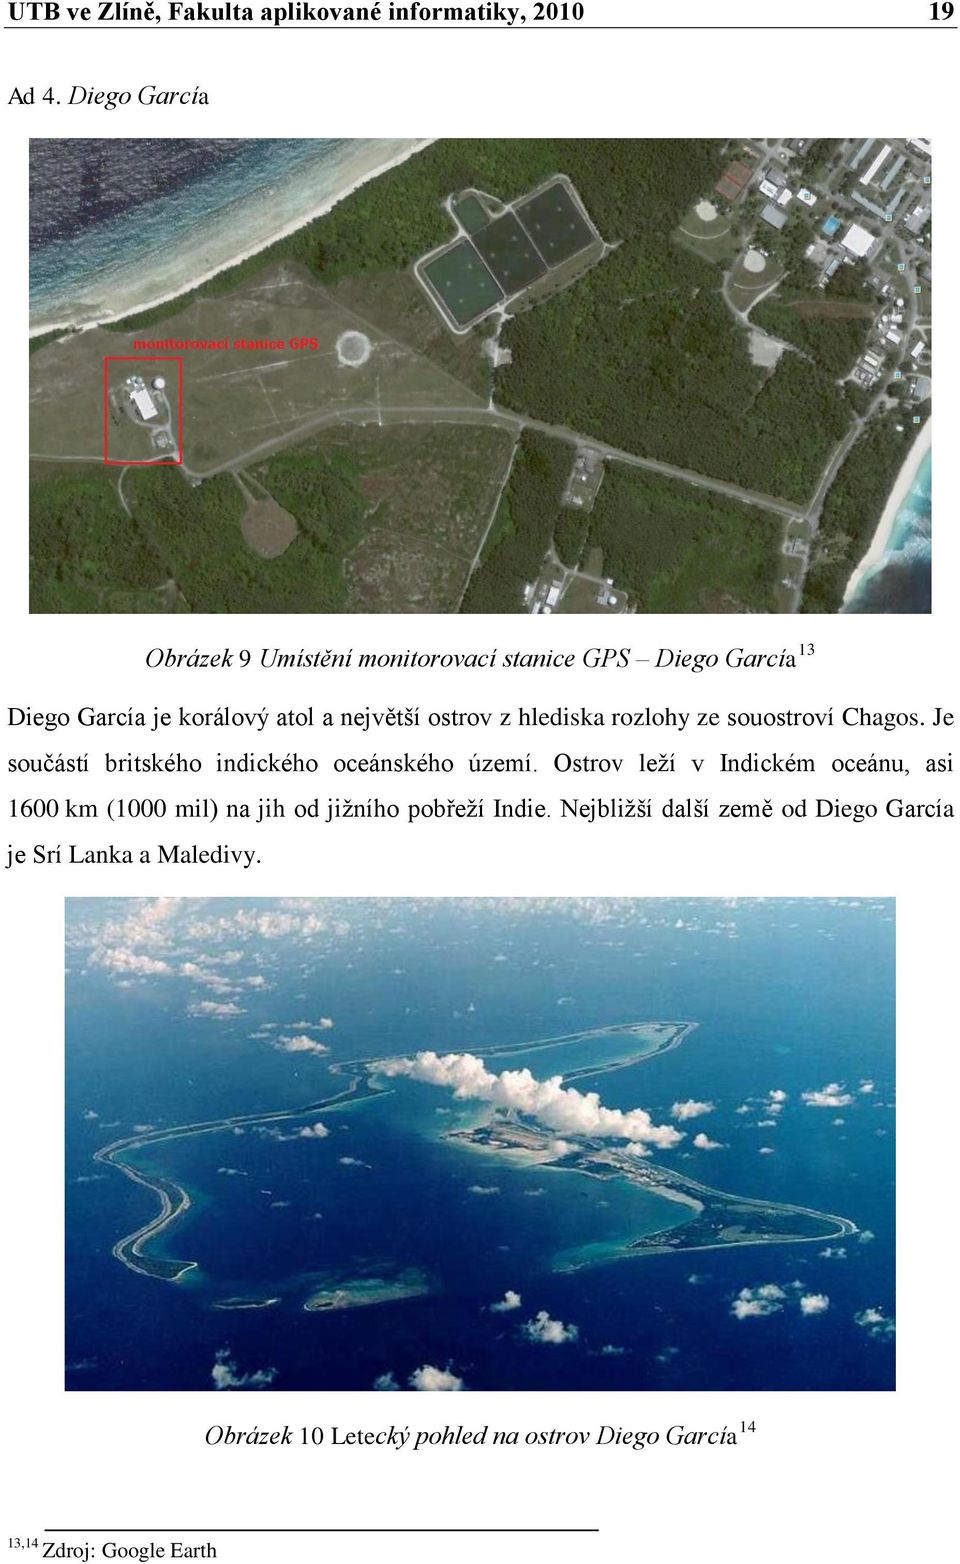 hlediska rozlohy ze souostroví Chagos. Je součástí britského indického oceánského území.